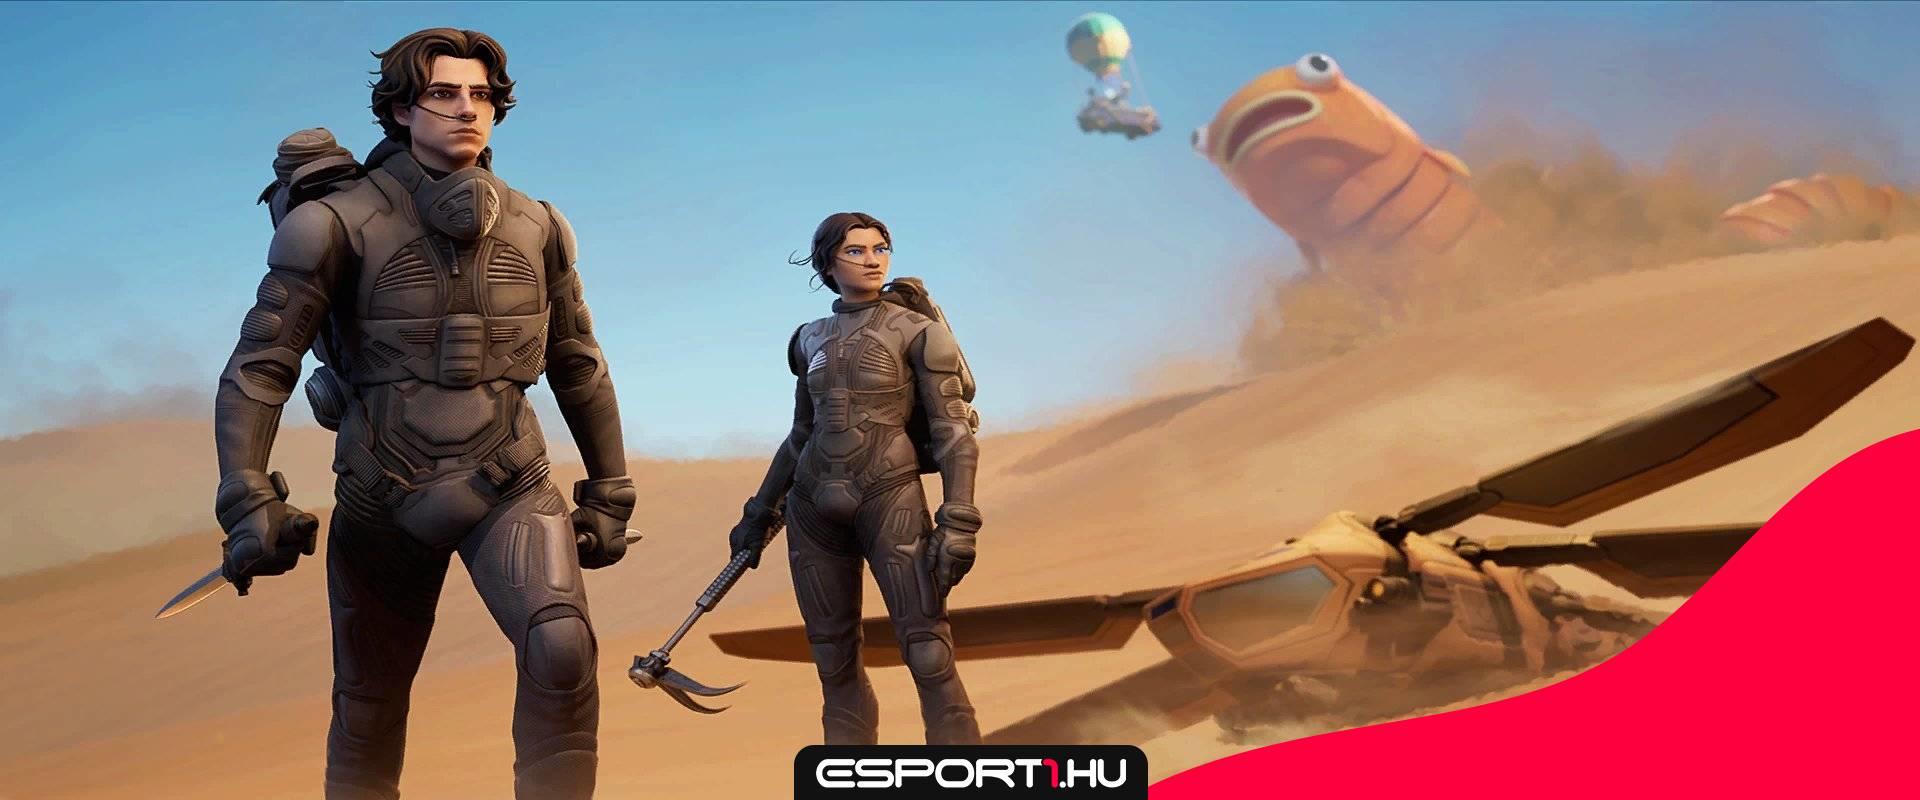 Újabb hét, újabb együttműködés: Ezúttal a Dune szereplőit szerezhetjük majd meg a Fortnite-ban!